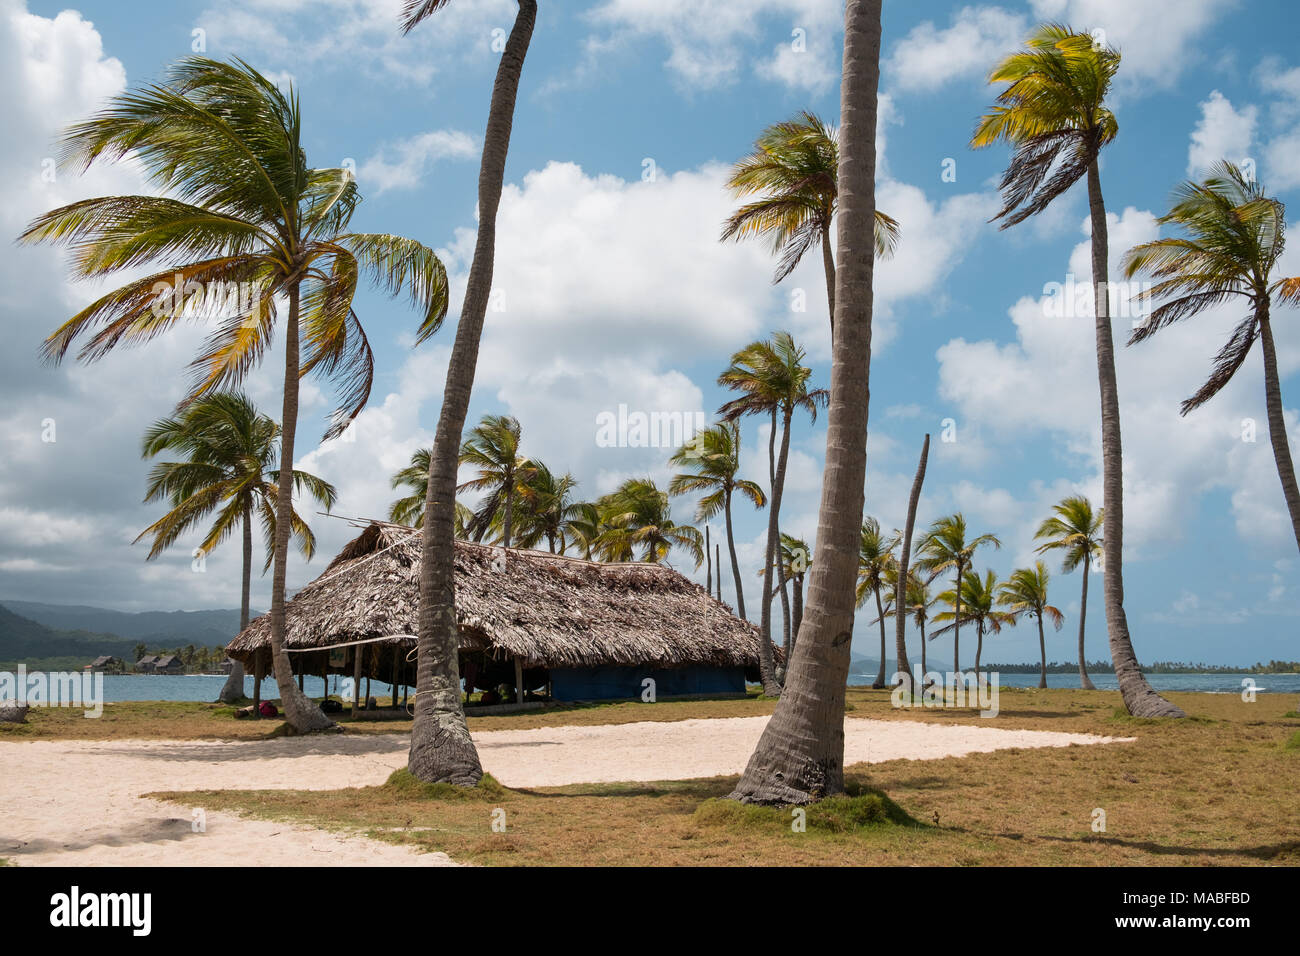 Chambre , bungalow avec toit de chaume sur palm tree island - Banque D'Images